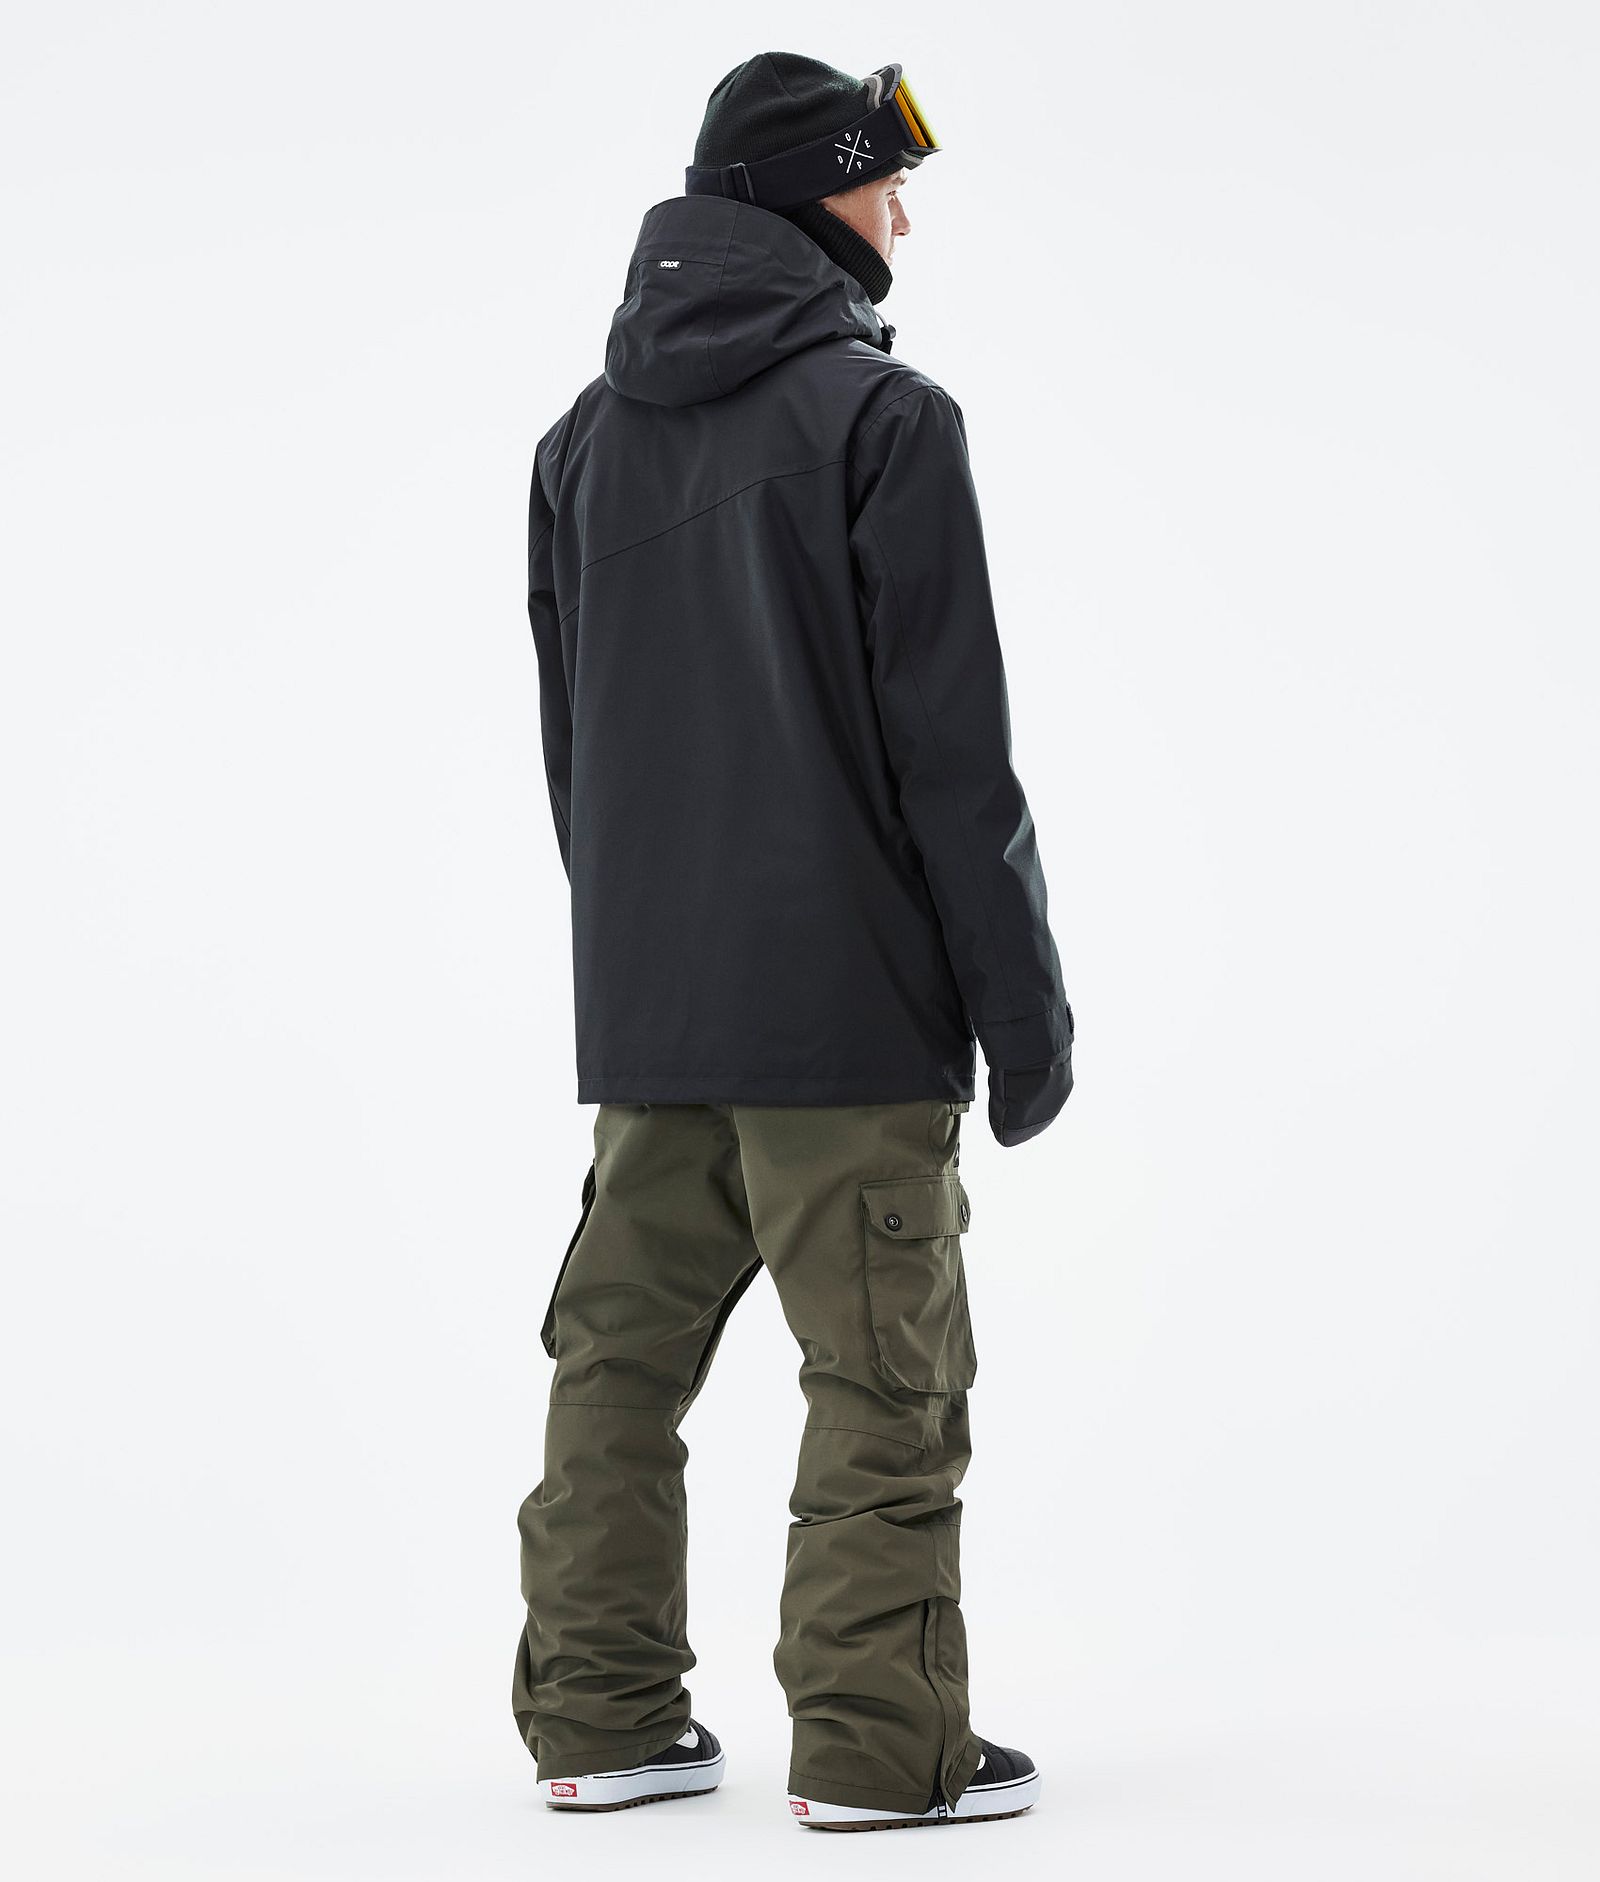 Adept Snowboardový Outfit Pánské Black/Olive Green